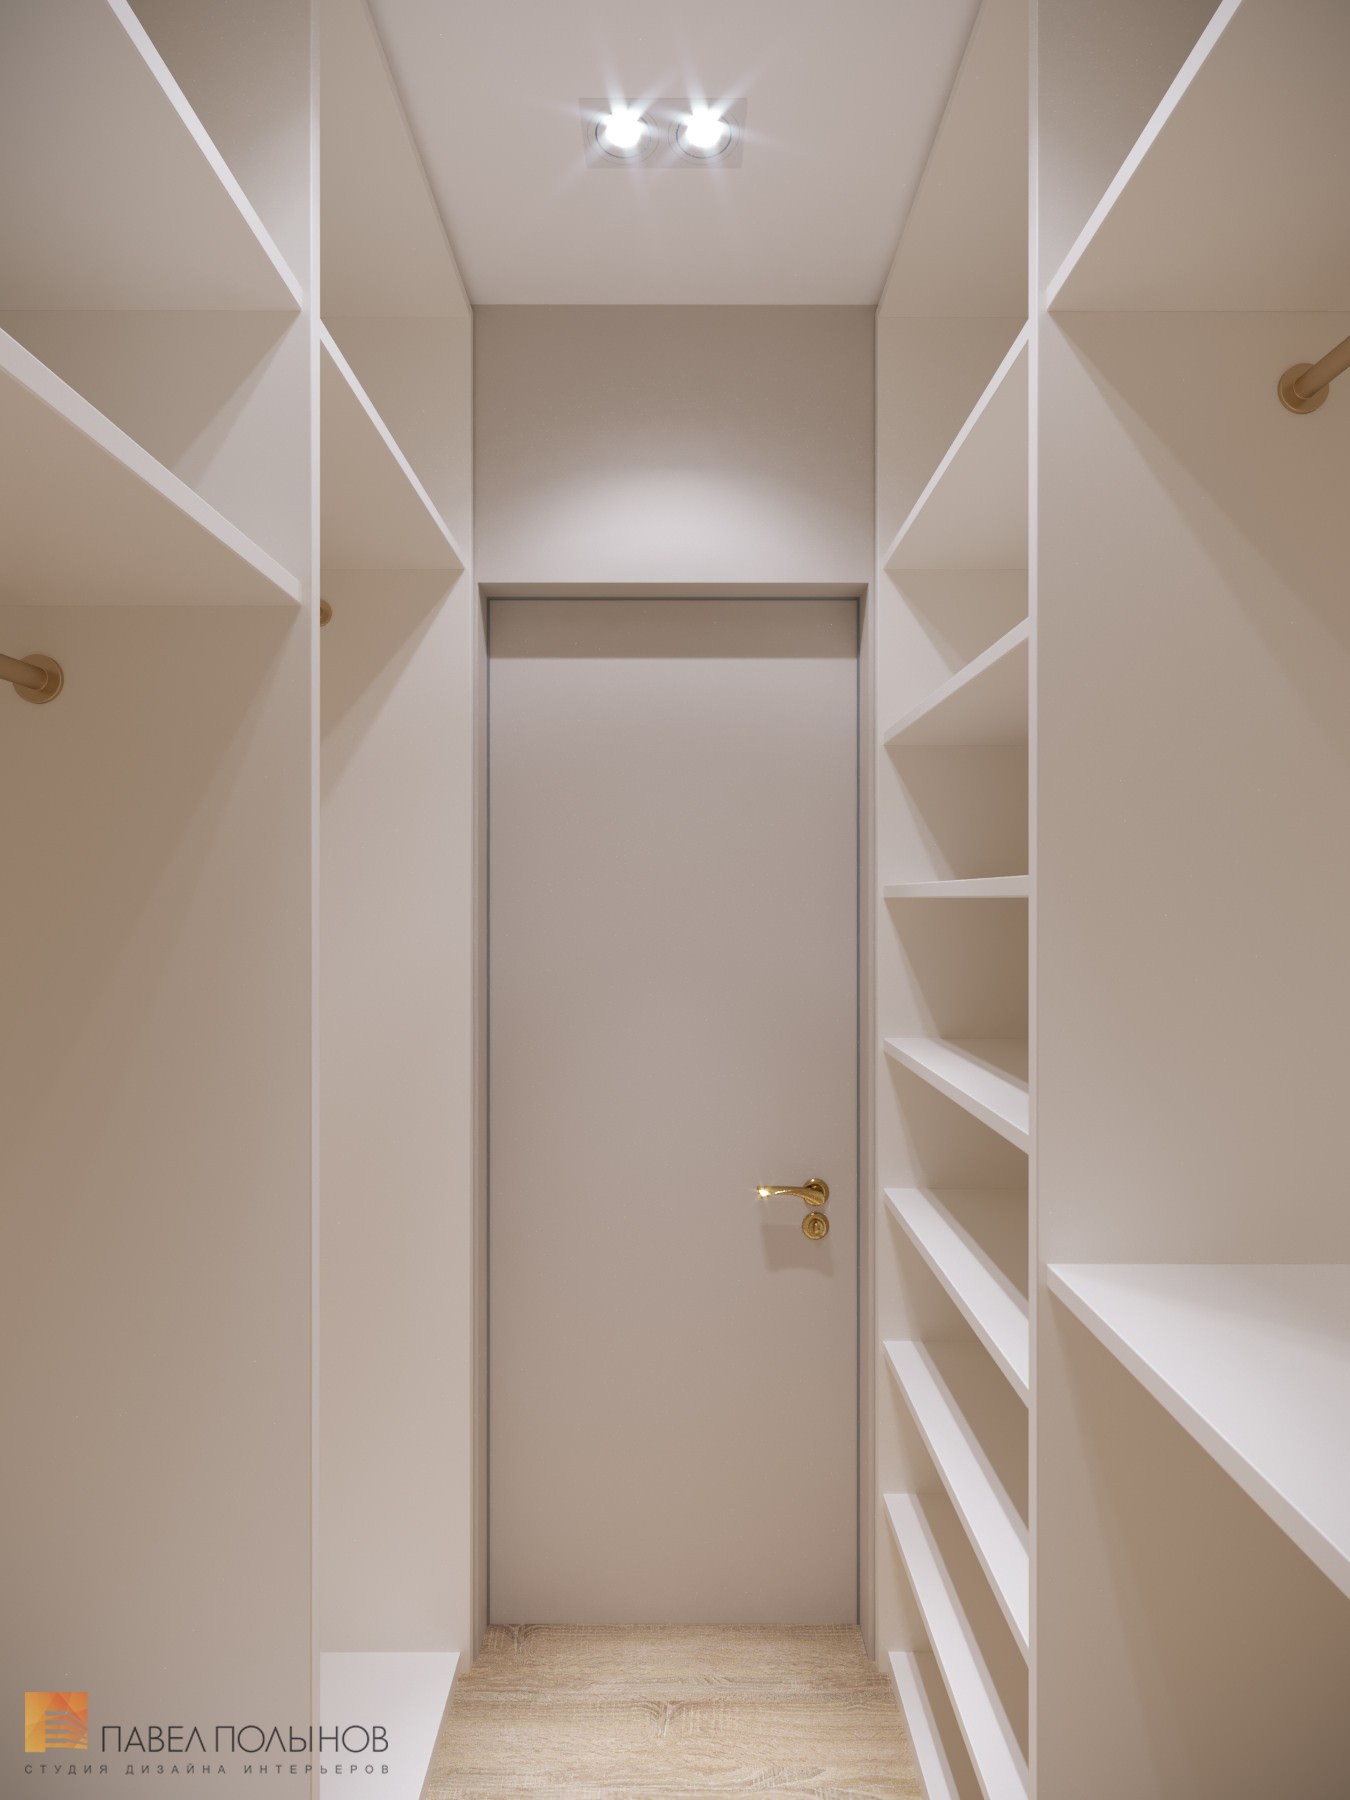 Фото дизайн гардеробной из проекта «Интерьер квартиры в стиле неоклассики, ЖК «Пресня Сити», 46 кв.м.»